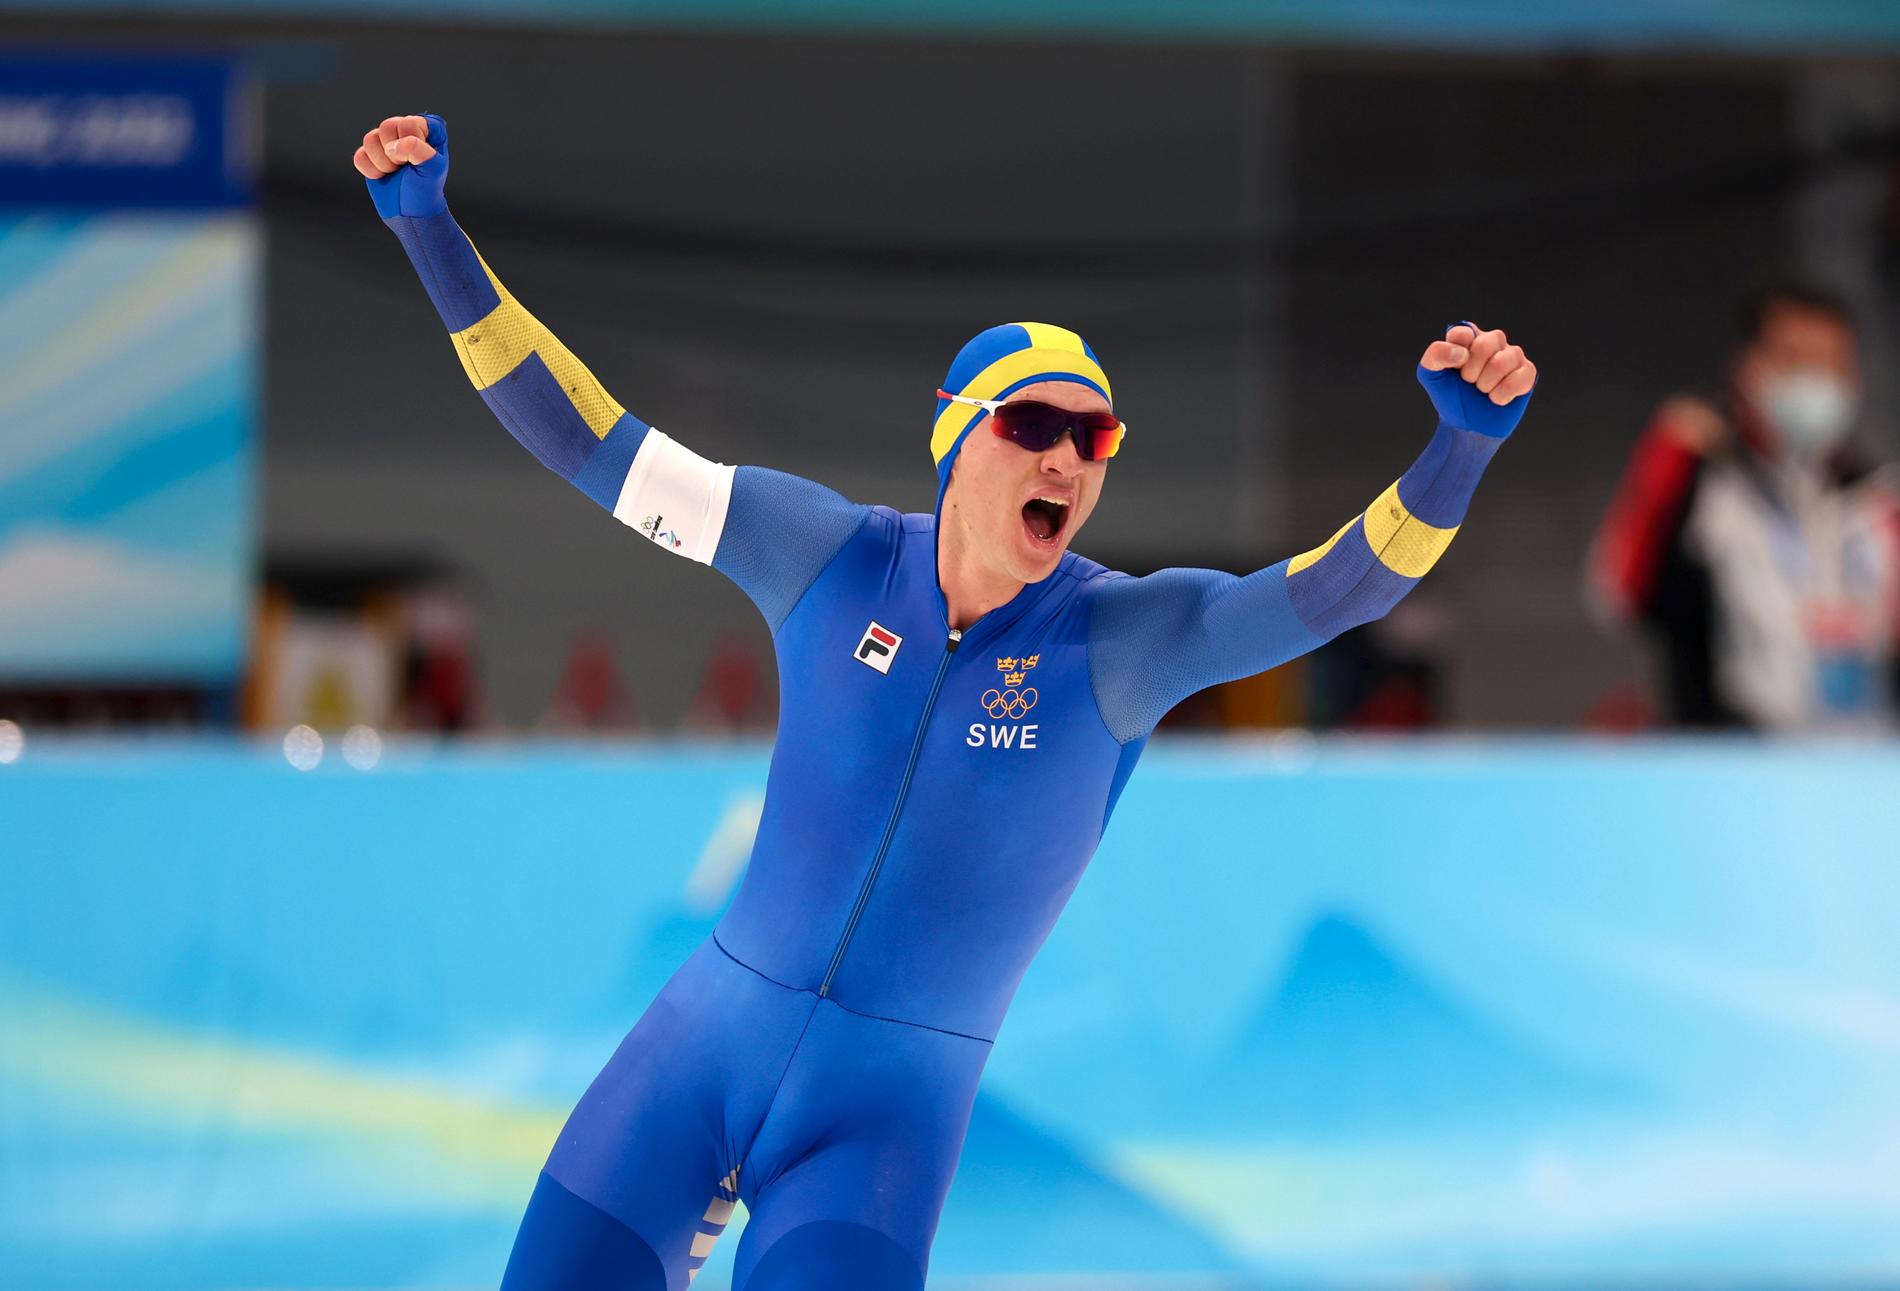 Van der Poel tar OS-guld i herrarnas 5000 m i skridsko under vinter-OS i Peking 2022.